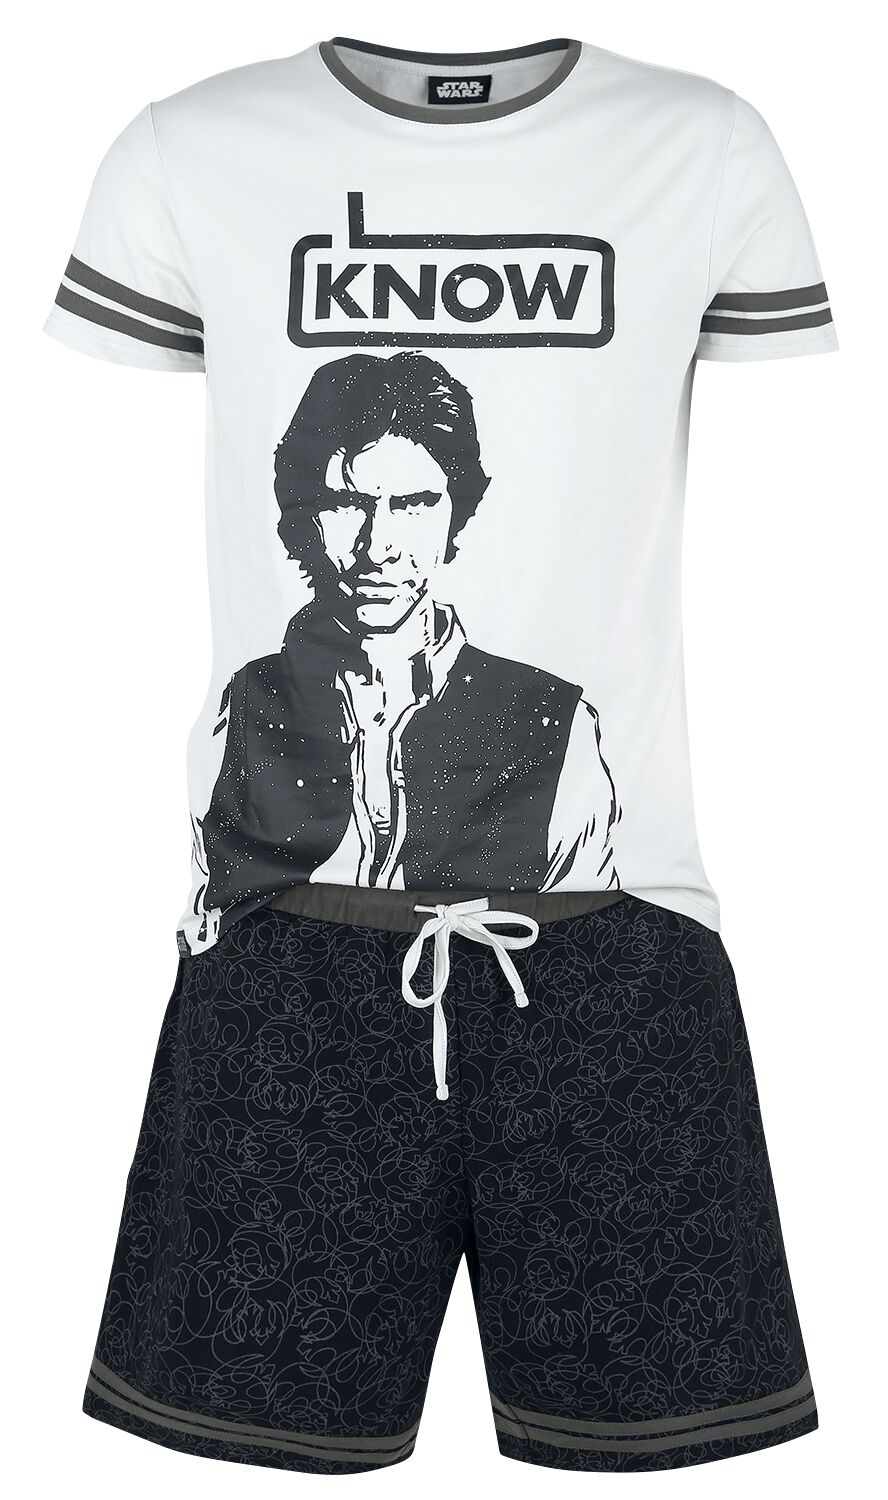 Star Wars Schlafanzug - Han Solo - I Know - S bis XXL - für Männer - Größe XL - grau/schwarz  - EMP exklusives Merchandise!